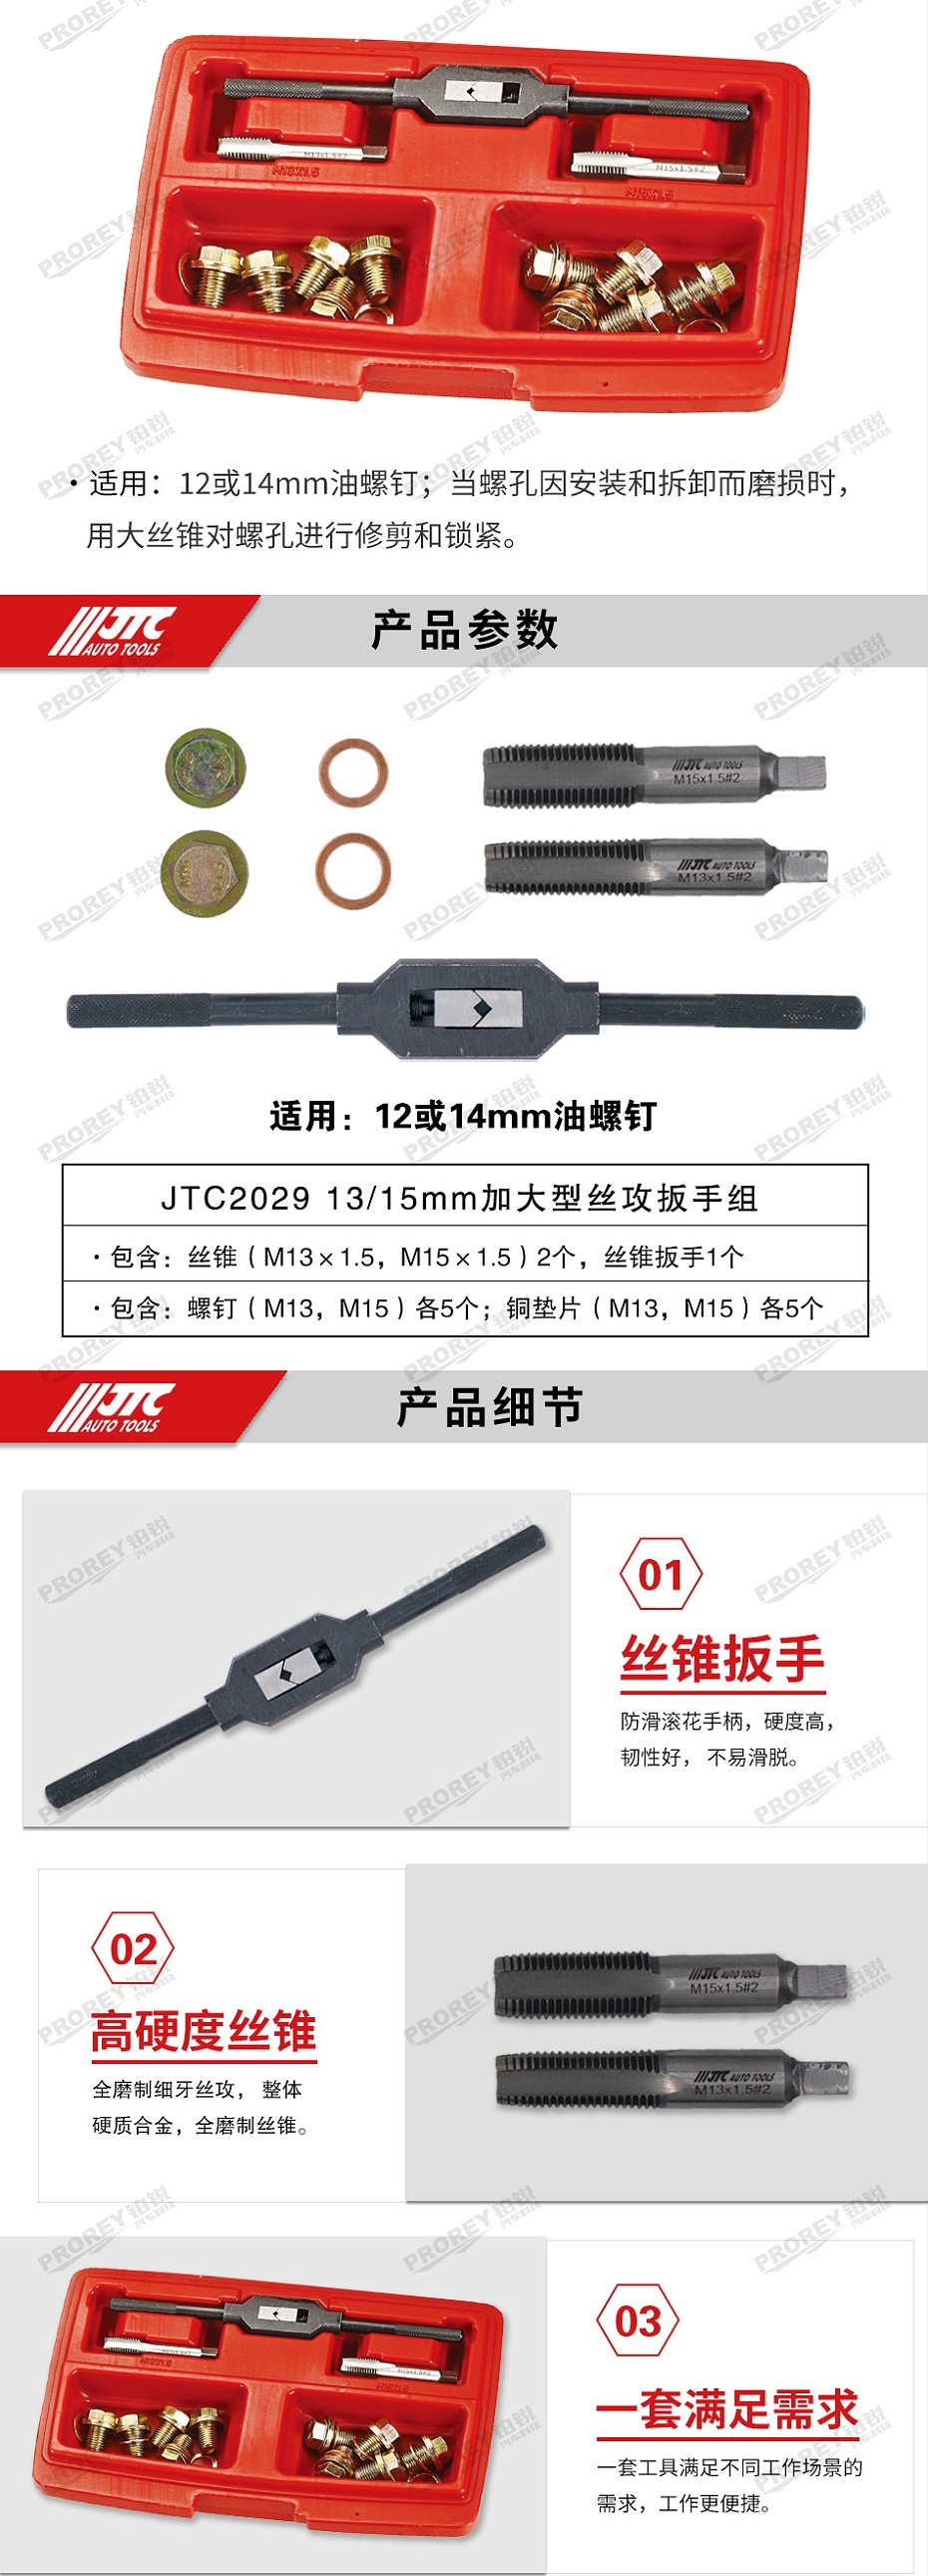 GW-130040730-JTC-2029-1315mm 加大型丝攻扳手组 -2